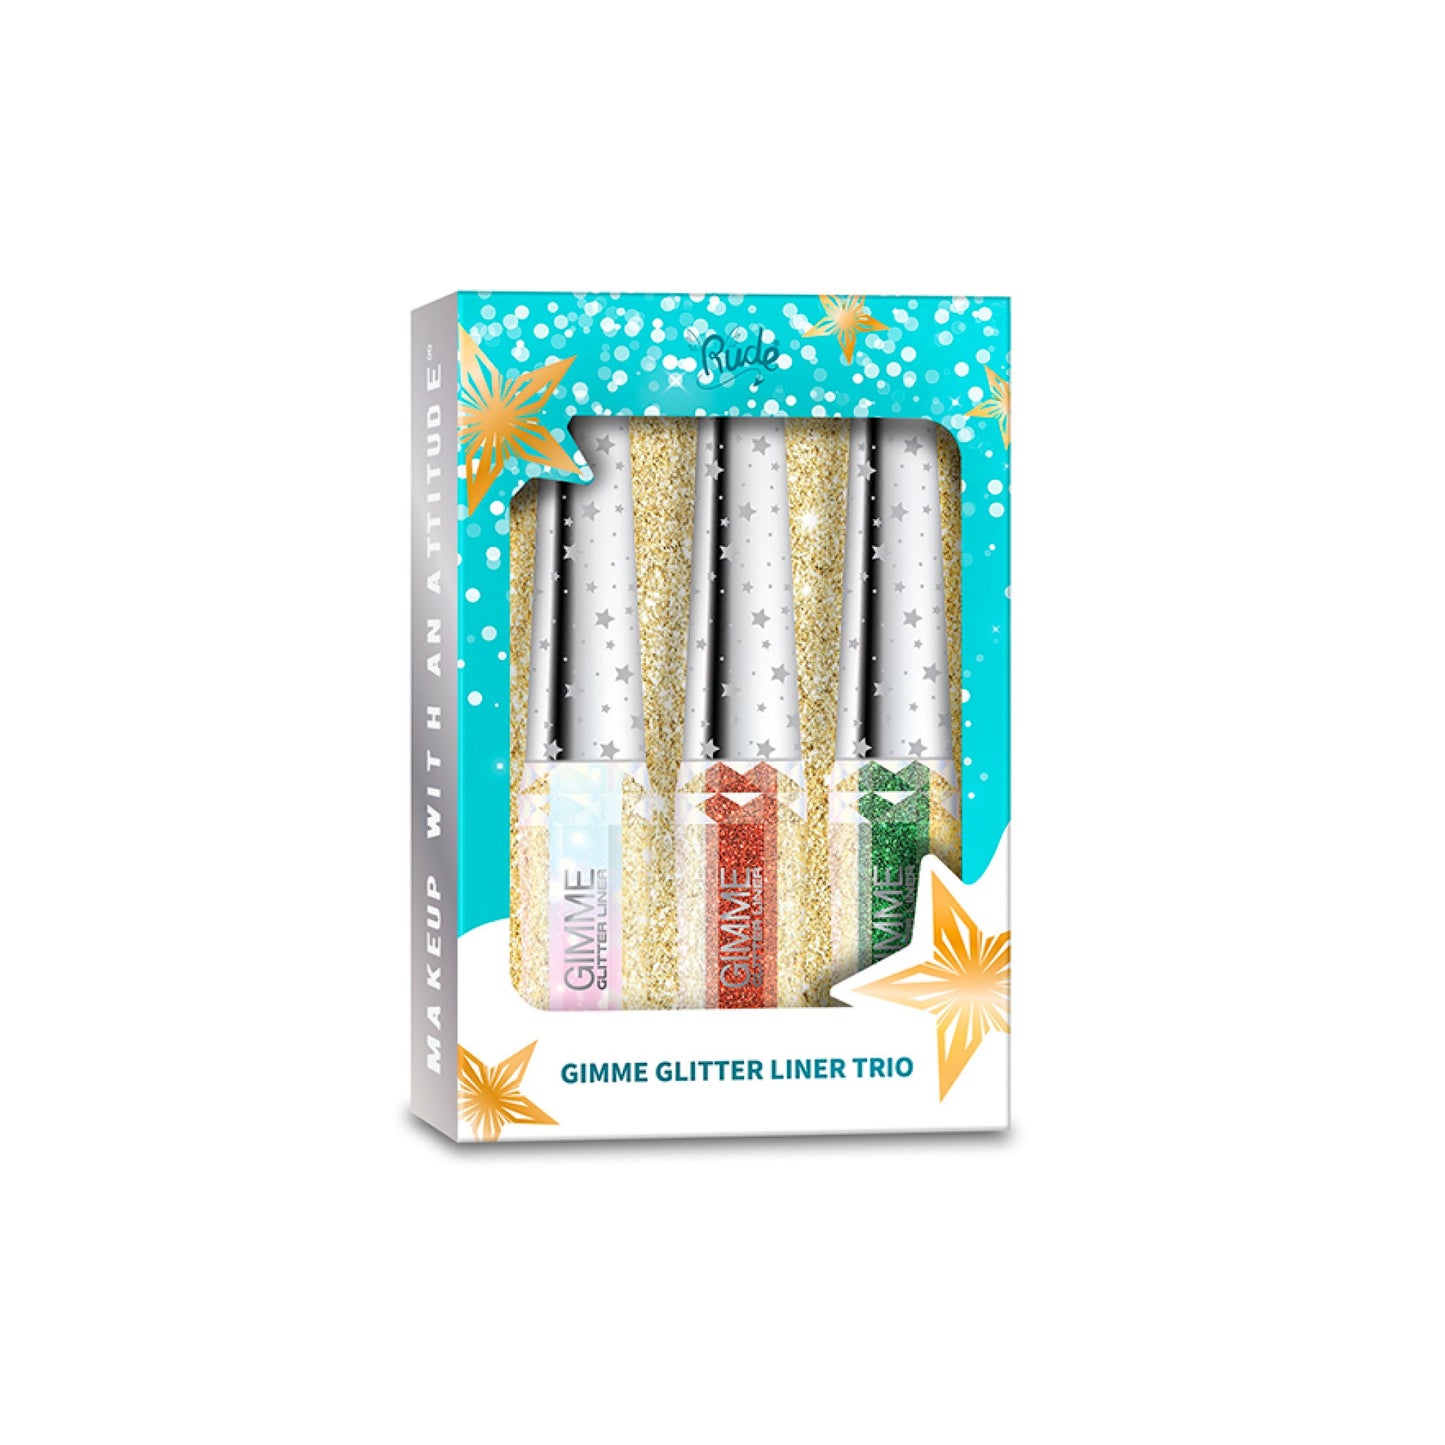 Gimme Glitter Liner Trio Gift Set